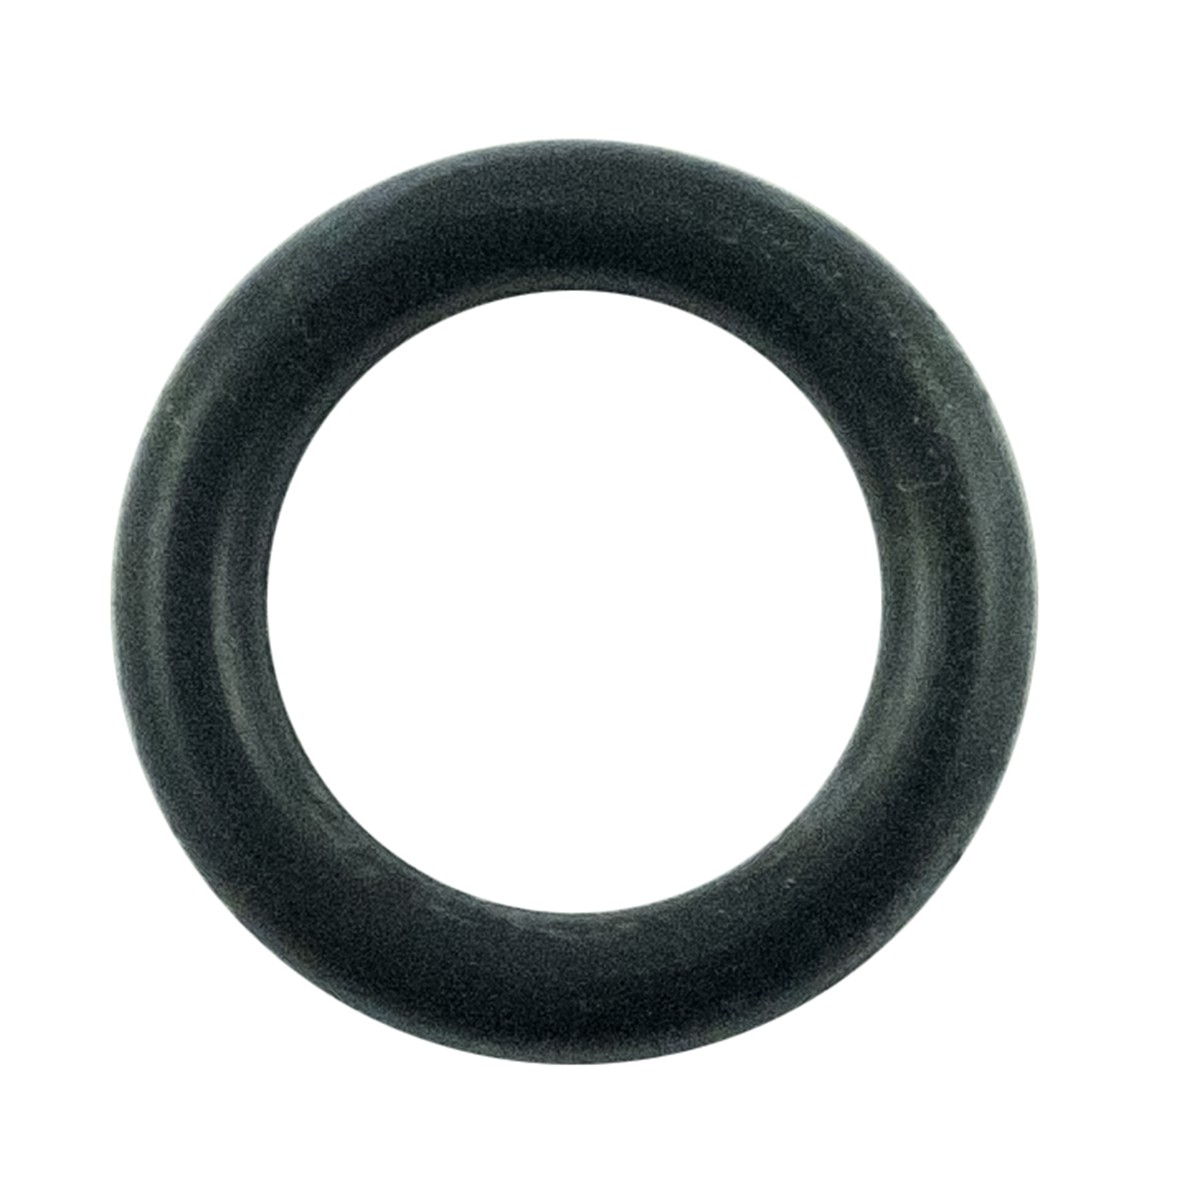 O-ring 9.80 x 2.40 mm / LS XJ25 / LS MT3.35 / LS MT3.40 / LS MT3.50 / LS MT3.60 / S801010A10 / 40029196